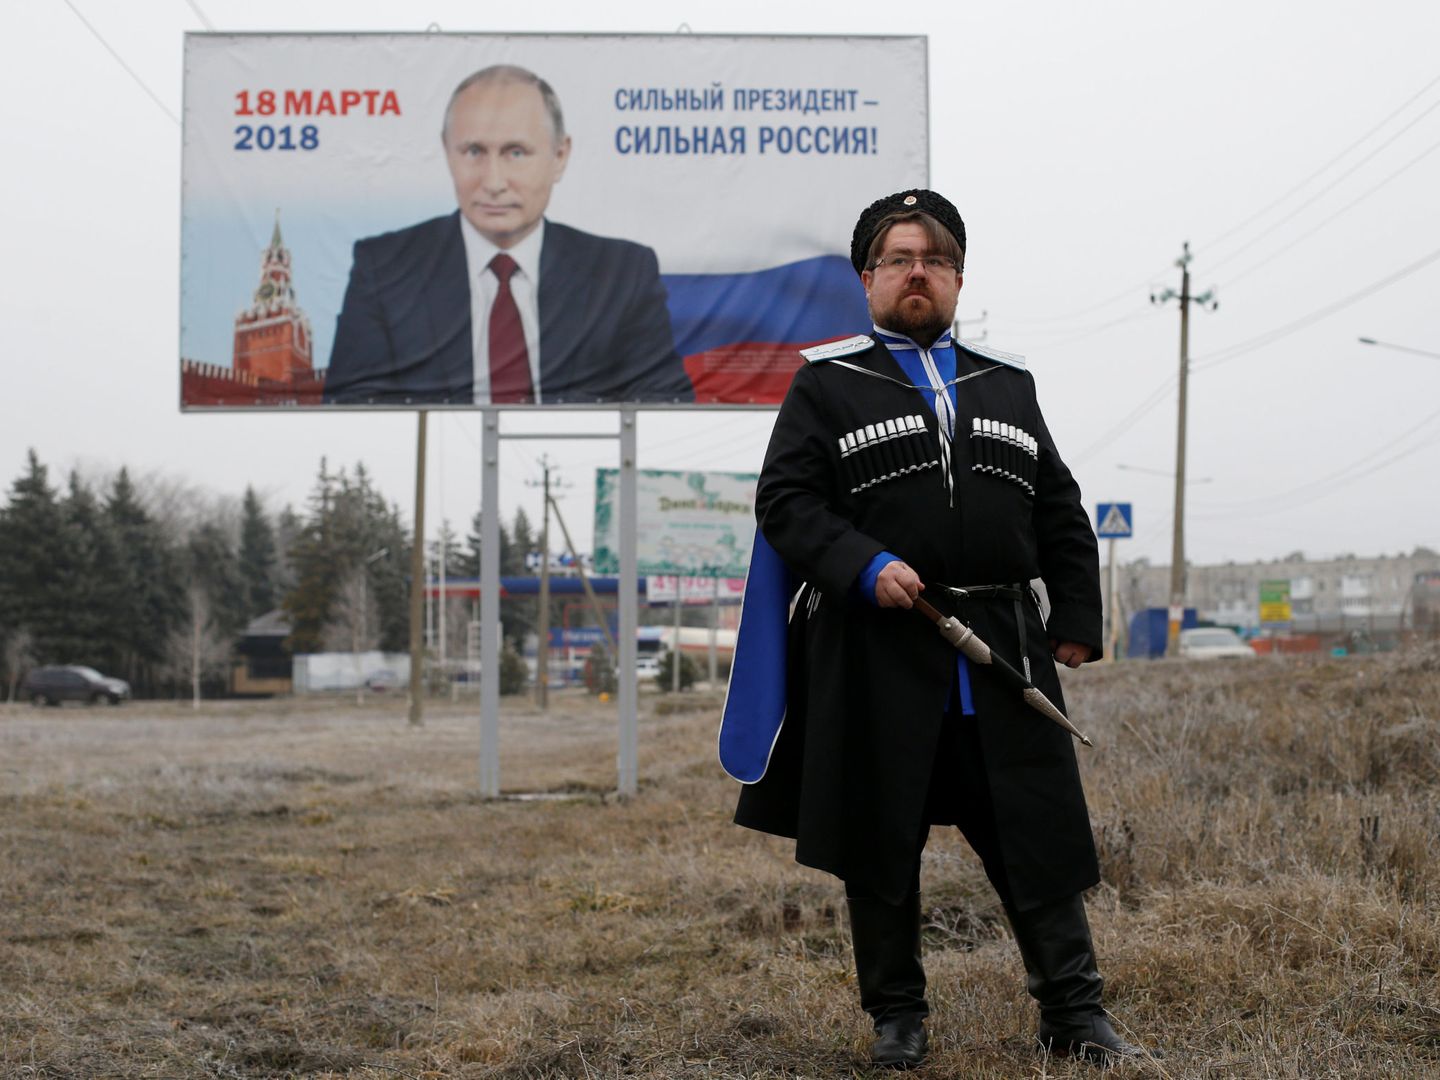 Andrei Vorontsov, de 42 años y simpatizante de Putin, posa ataviado con el traje cosaco local, en Mikhaylovsk, en la región de Stavropol. (Reuters)